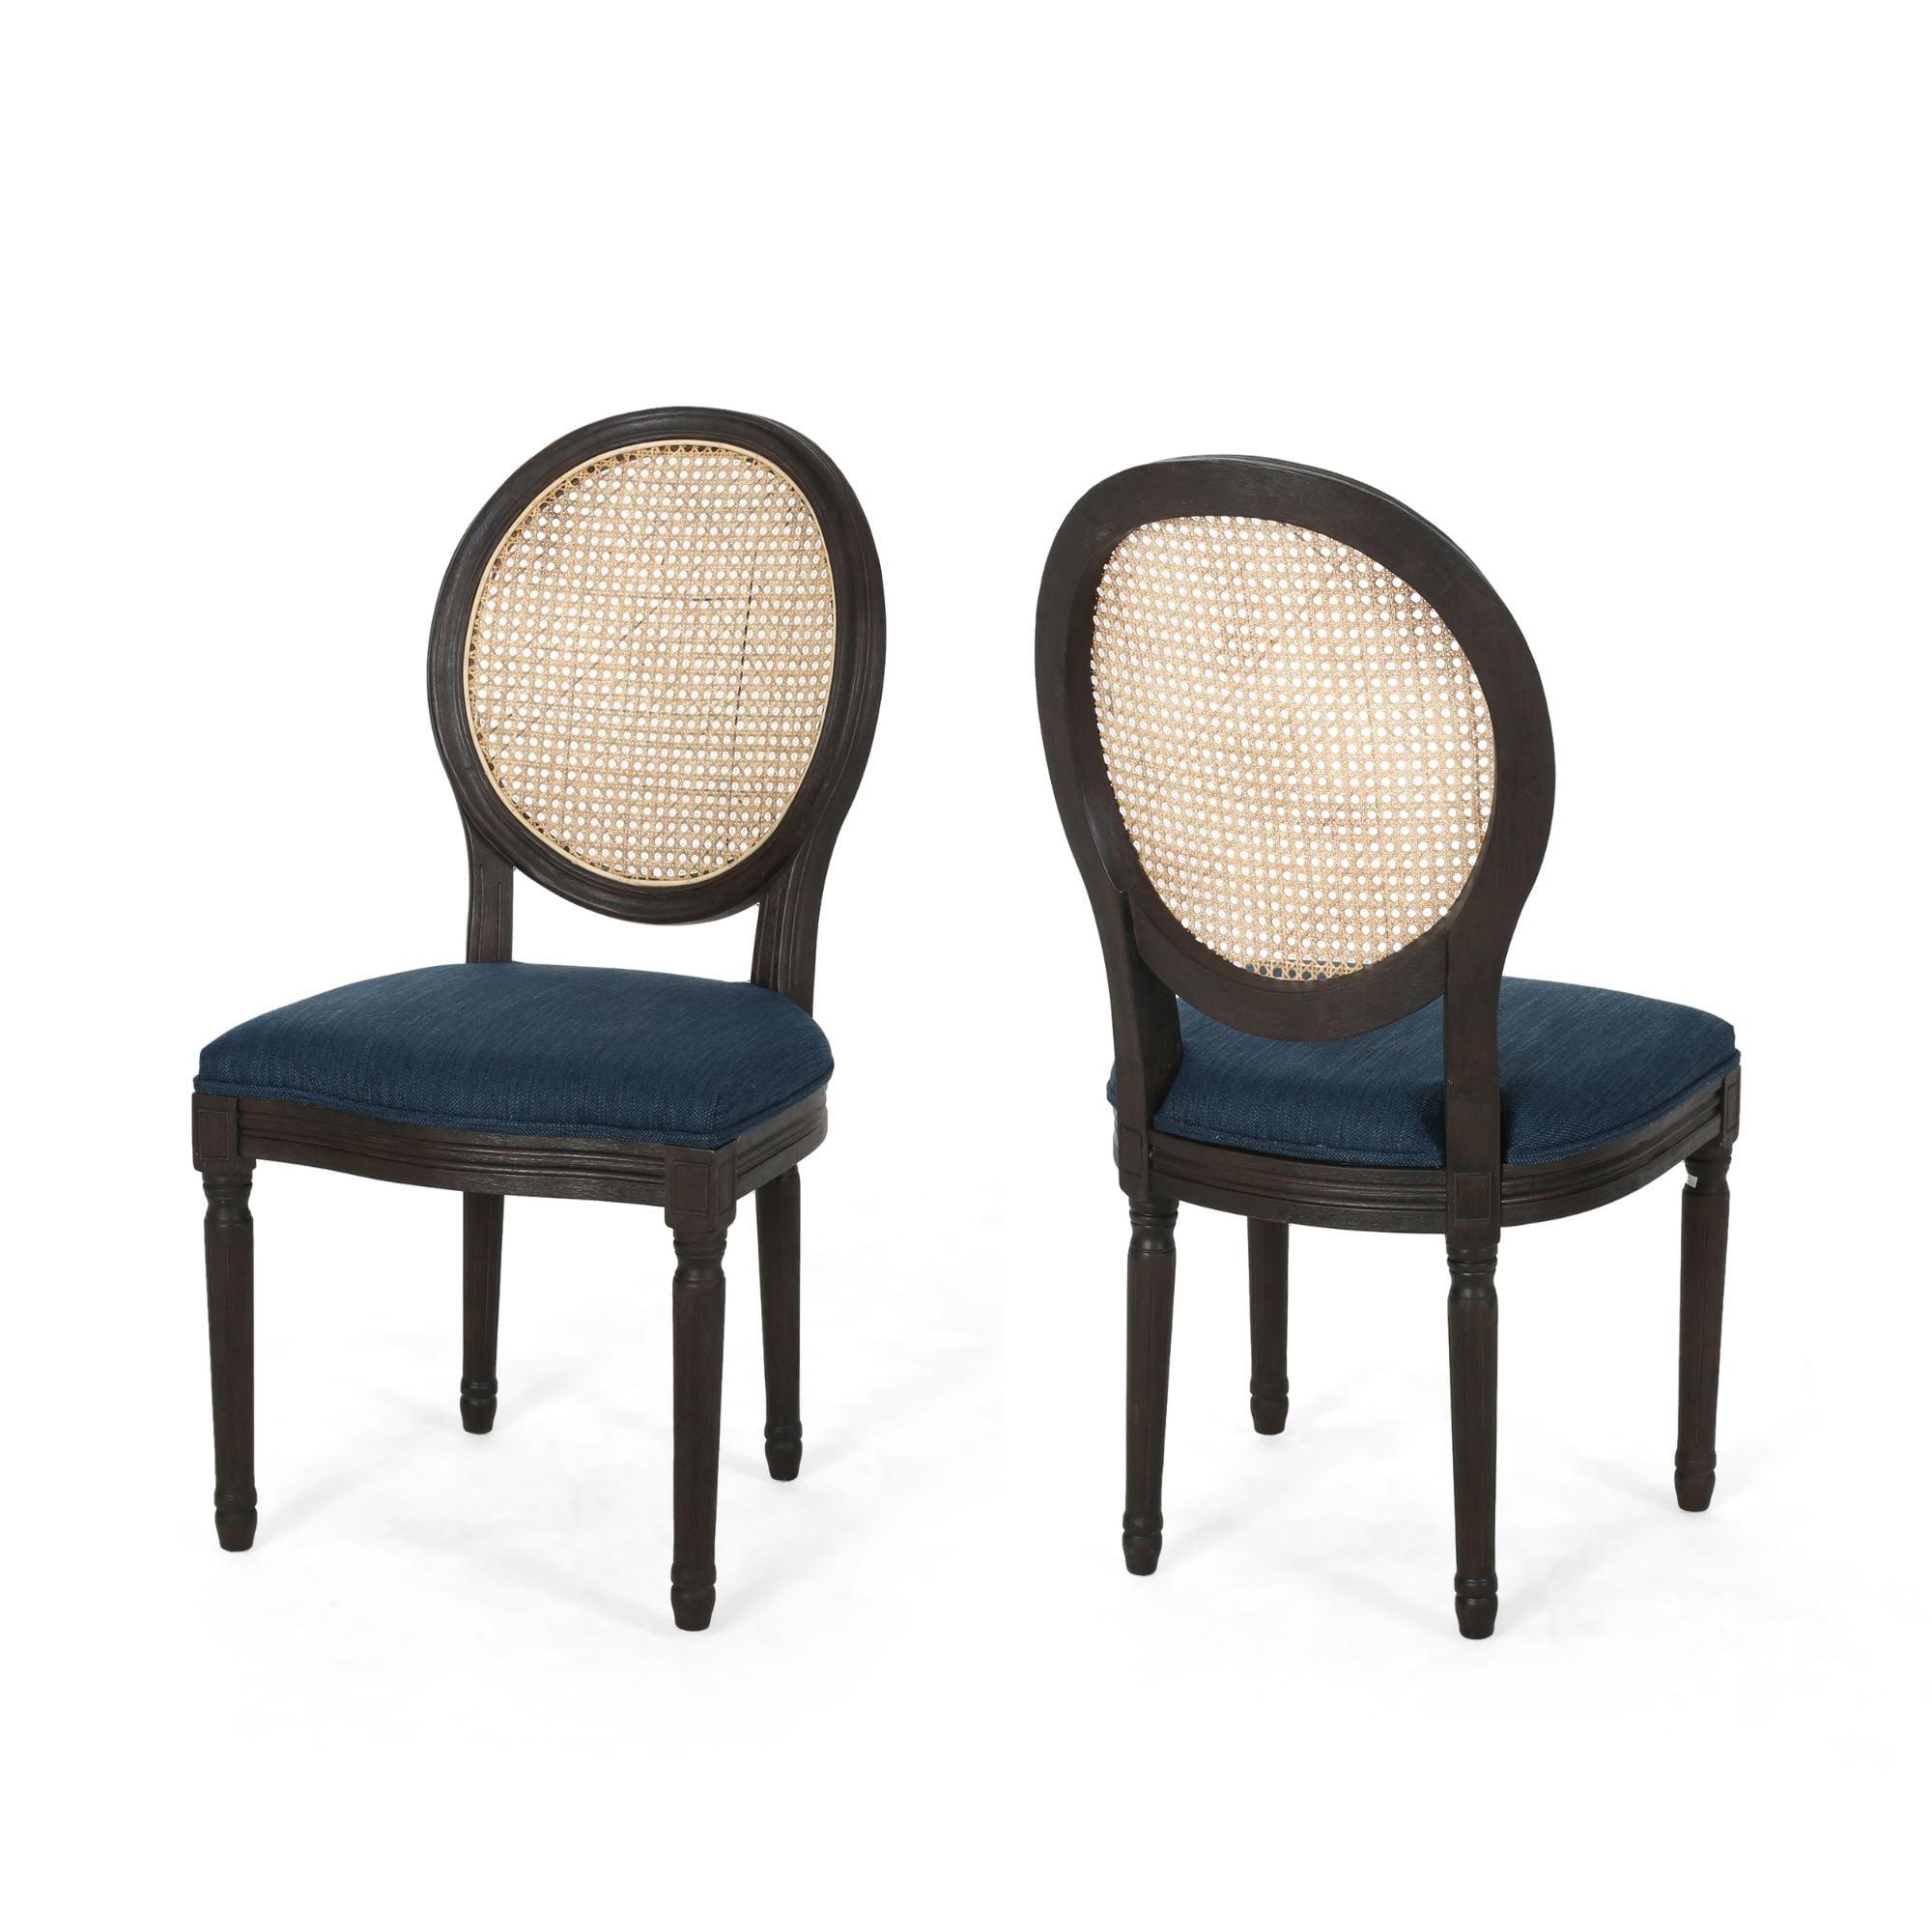 Elegant Navy Blue High-Back Wooden Side Chair Set of 2